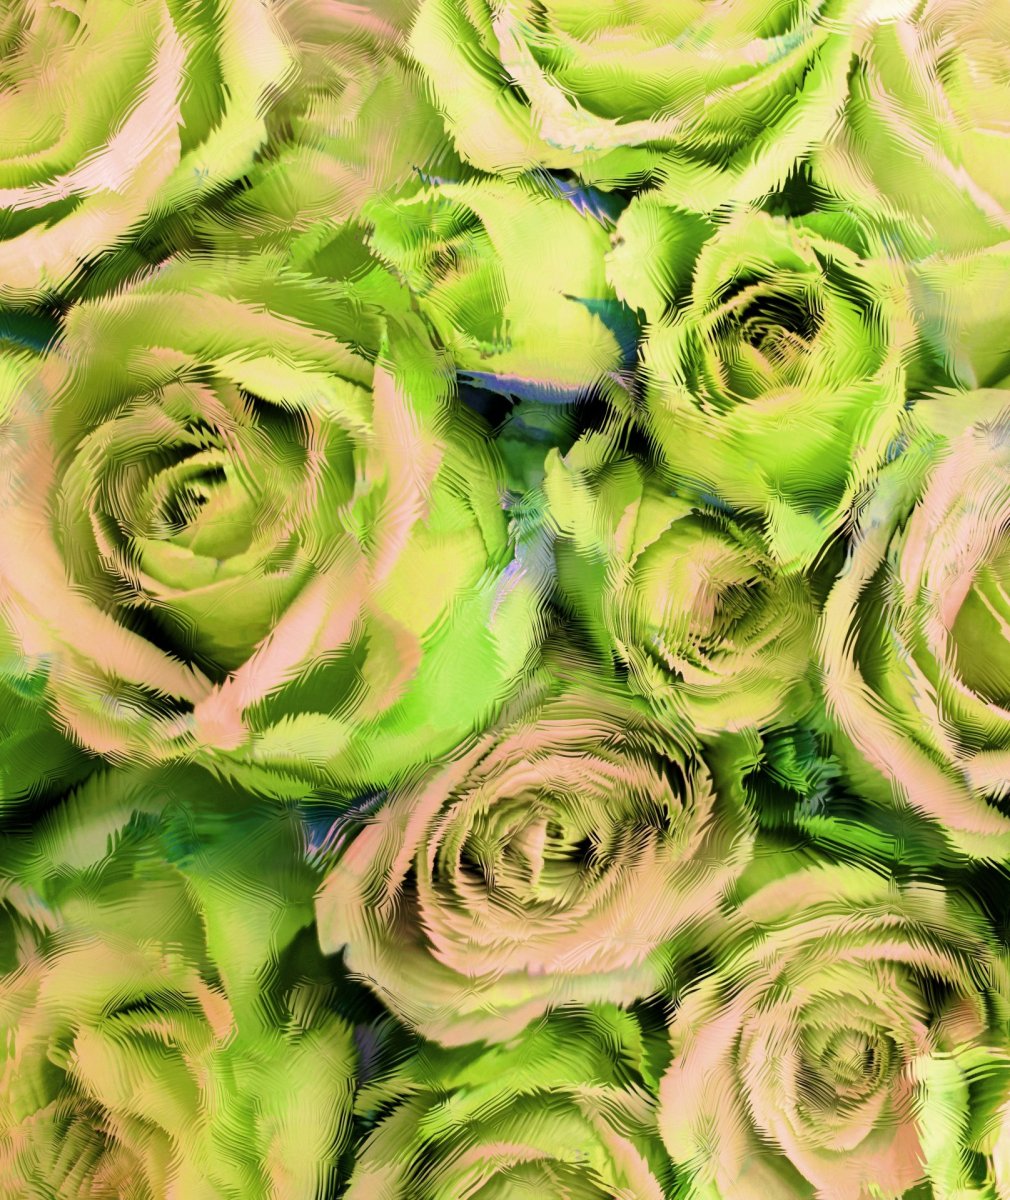 Зеленая роза фото натуральная